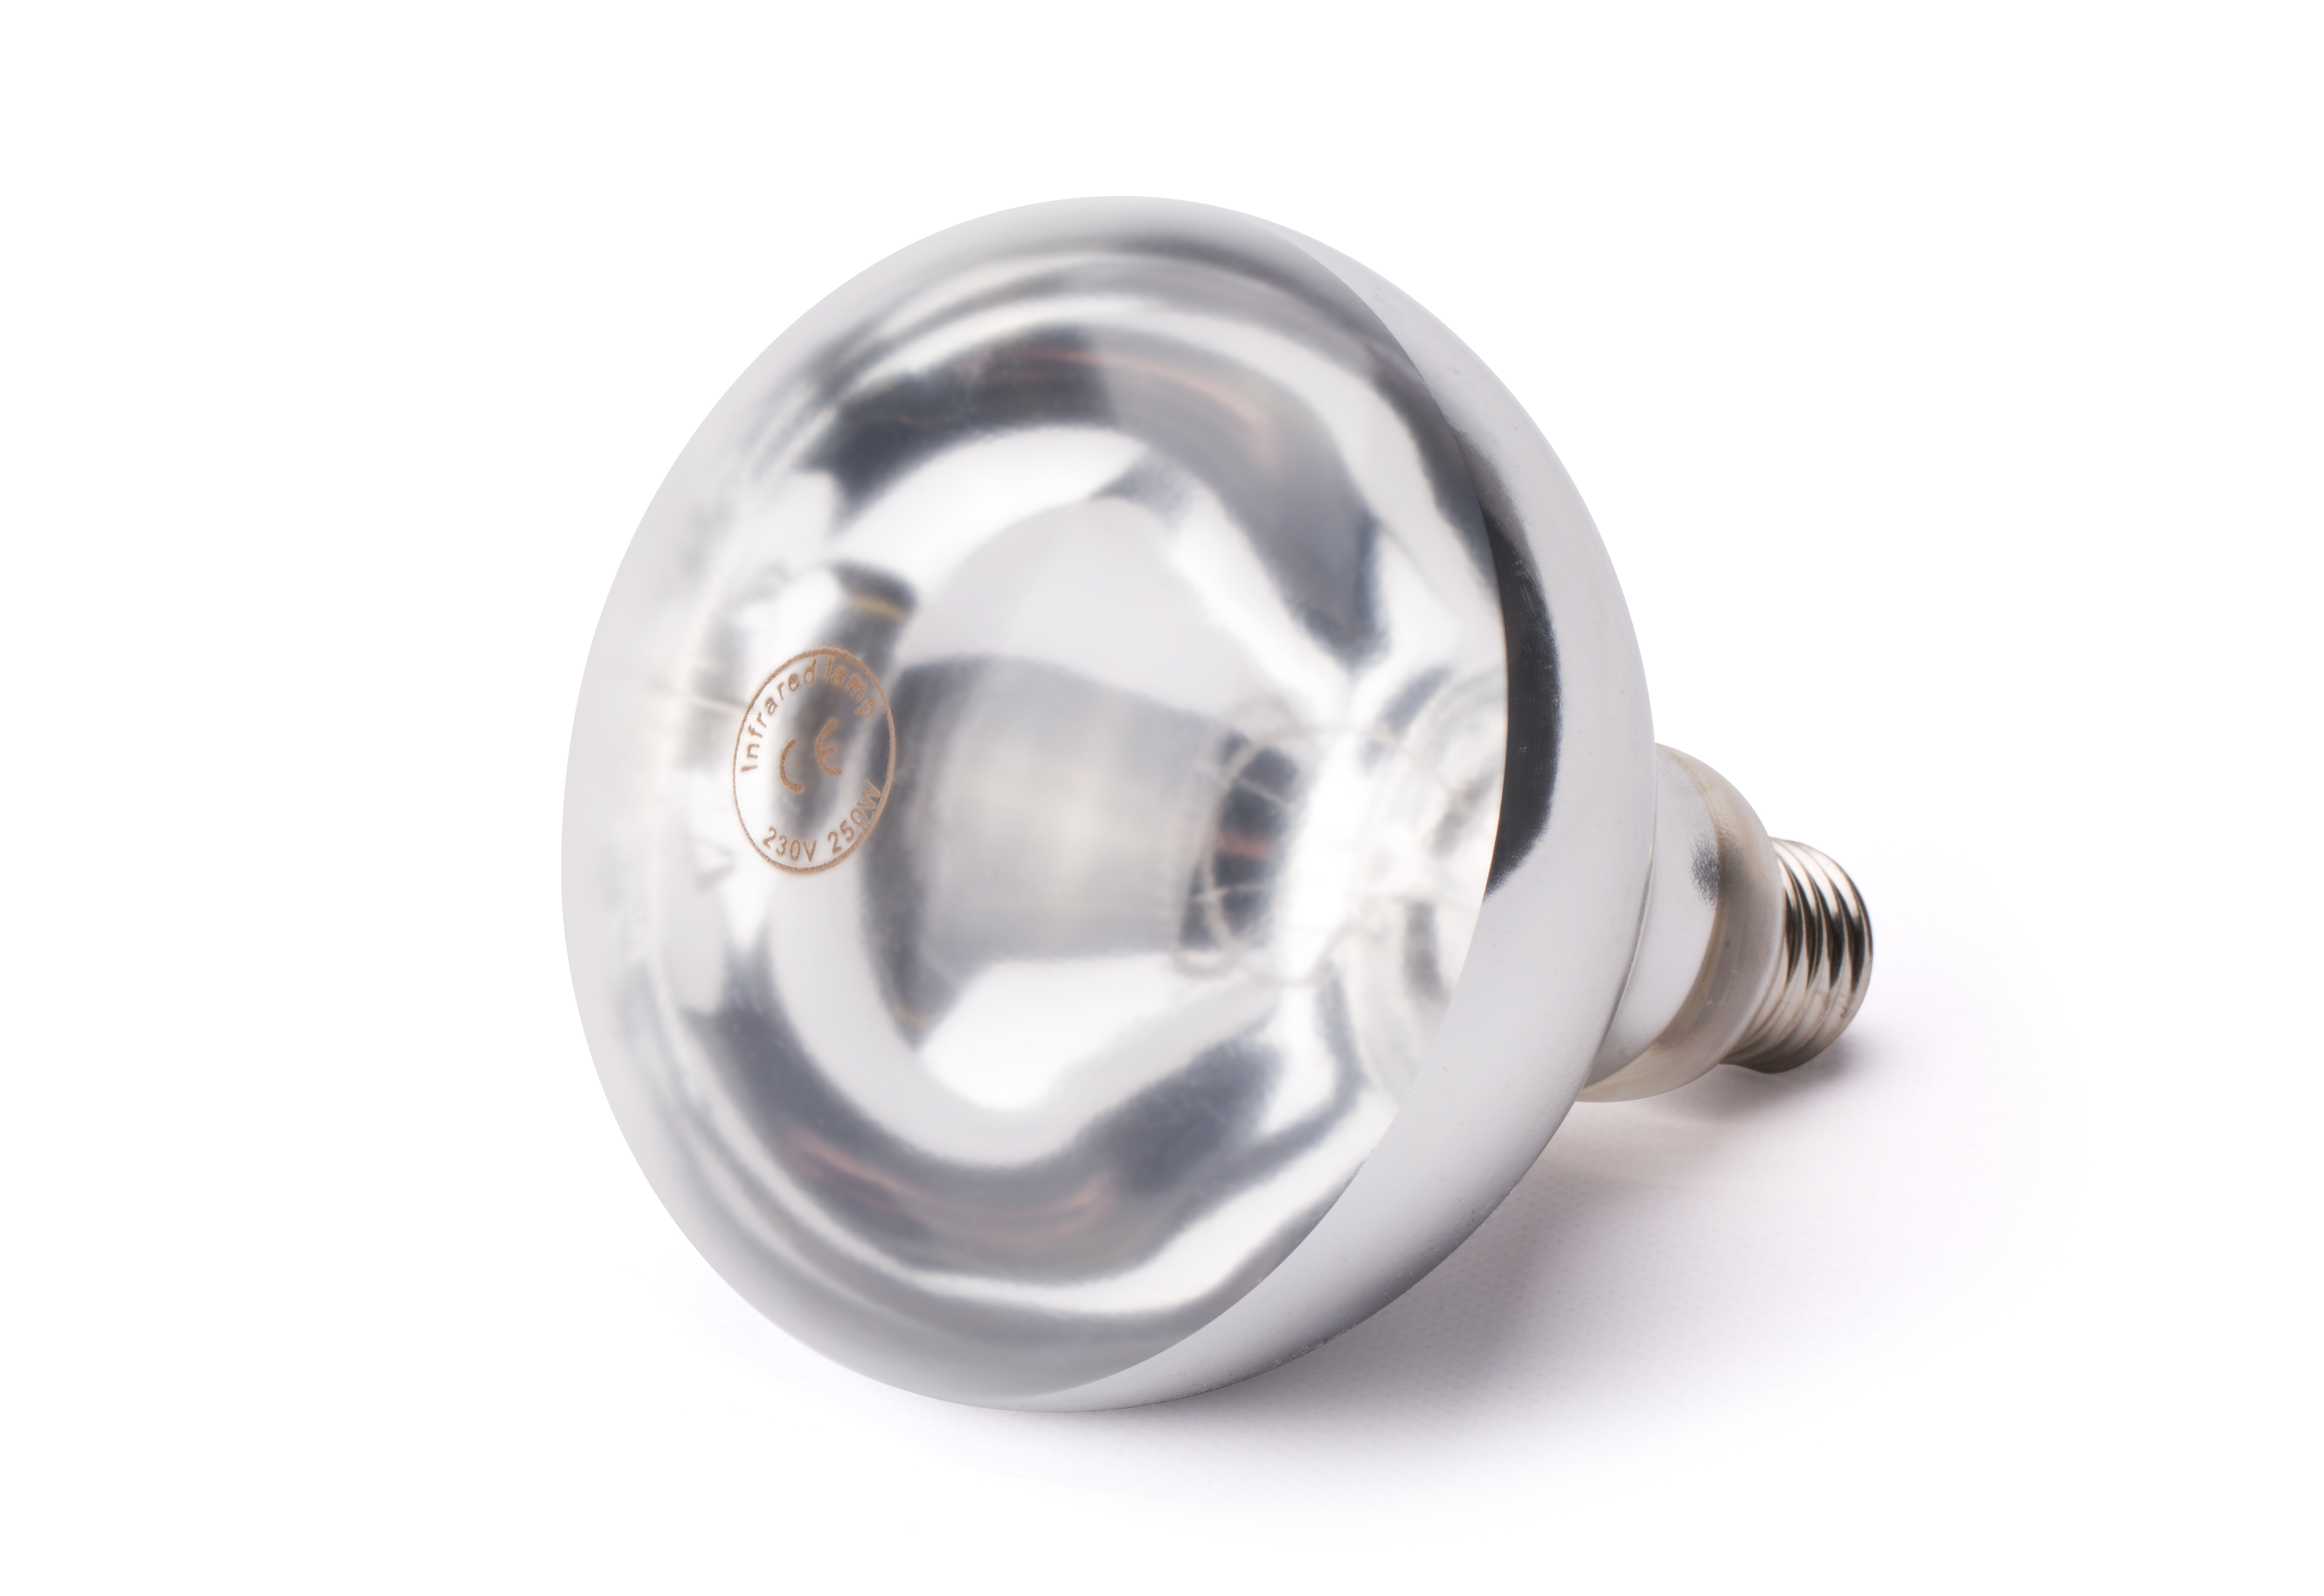 Ampoule infrarouge blanche 250 watts pour lampe chauffante culot E27